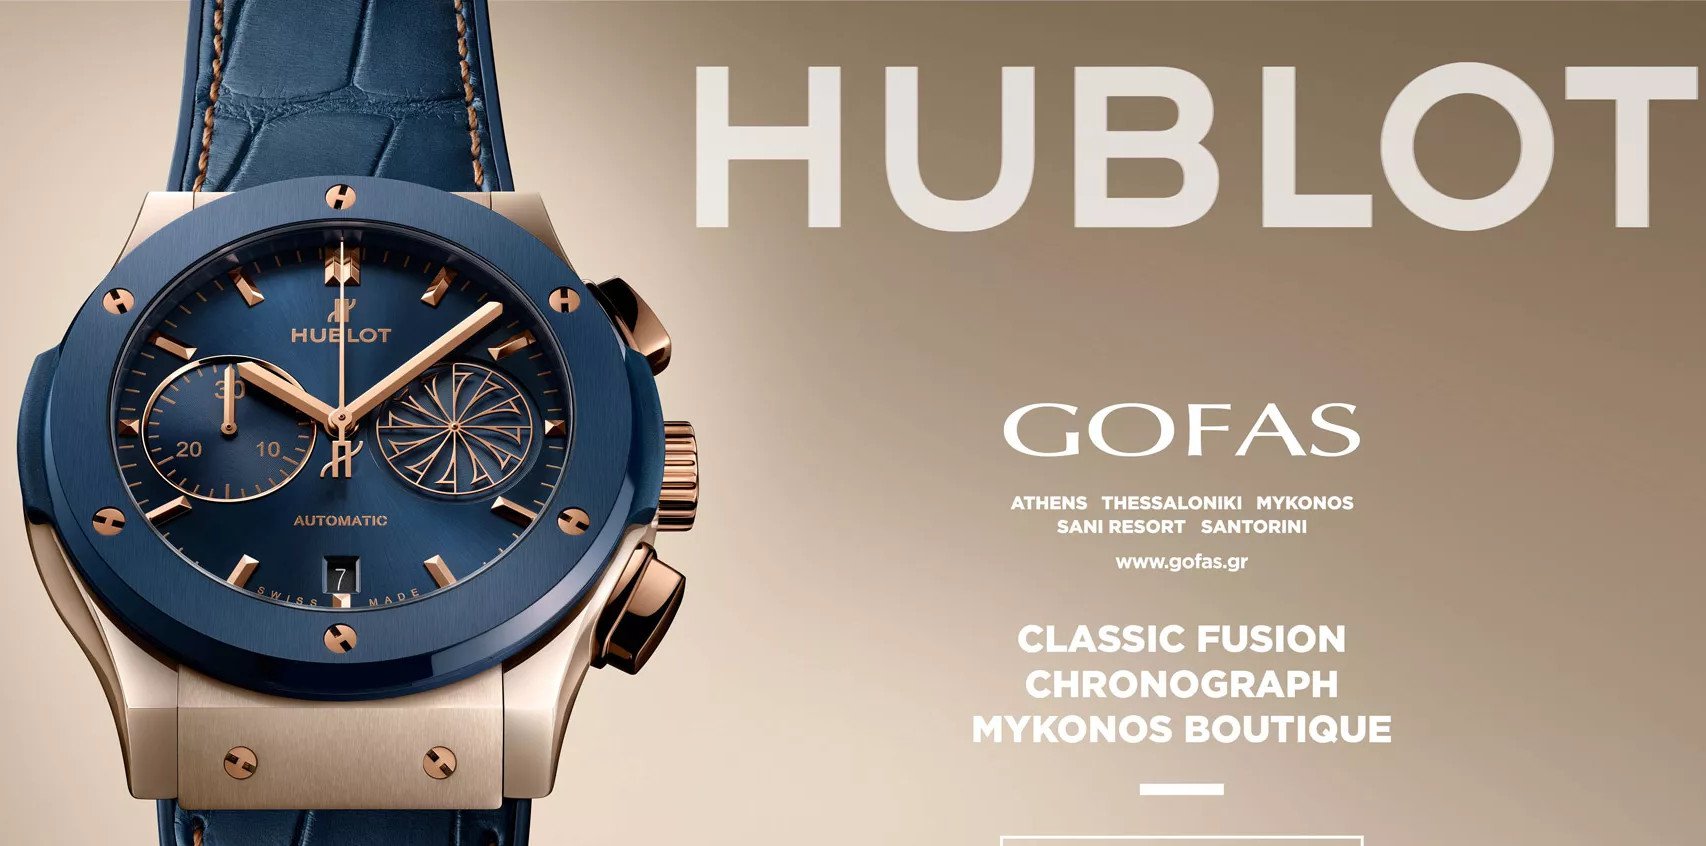 Η HUBLOT τιμά τη Μύκονο με το νέο Hublot Classic Fusion Chronograph Mykonos Boutique Limited Edition